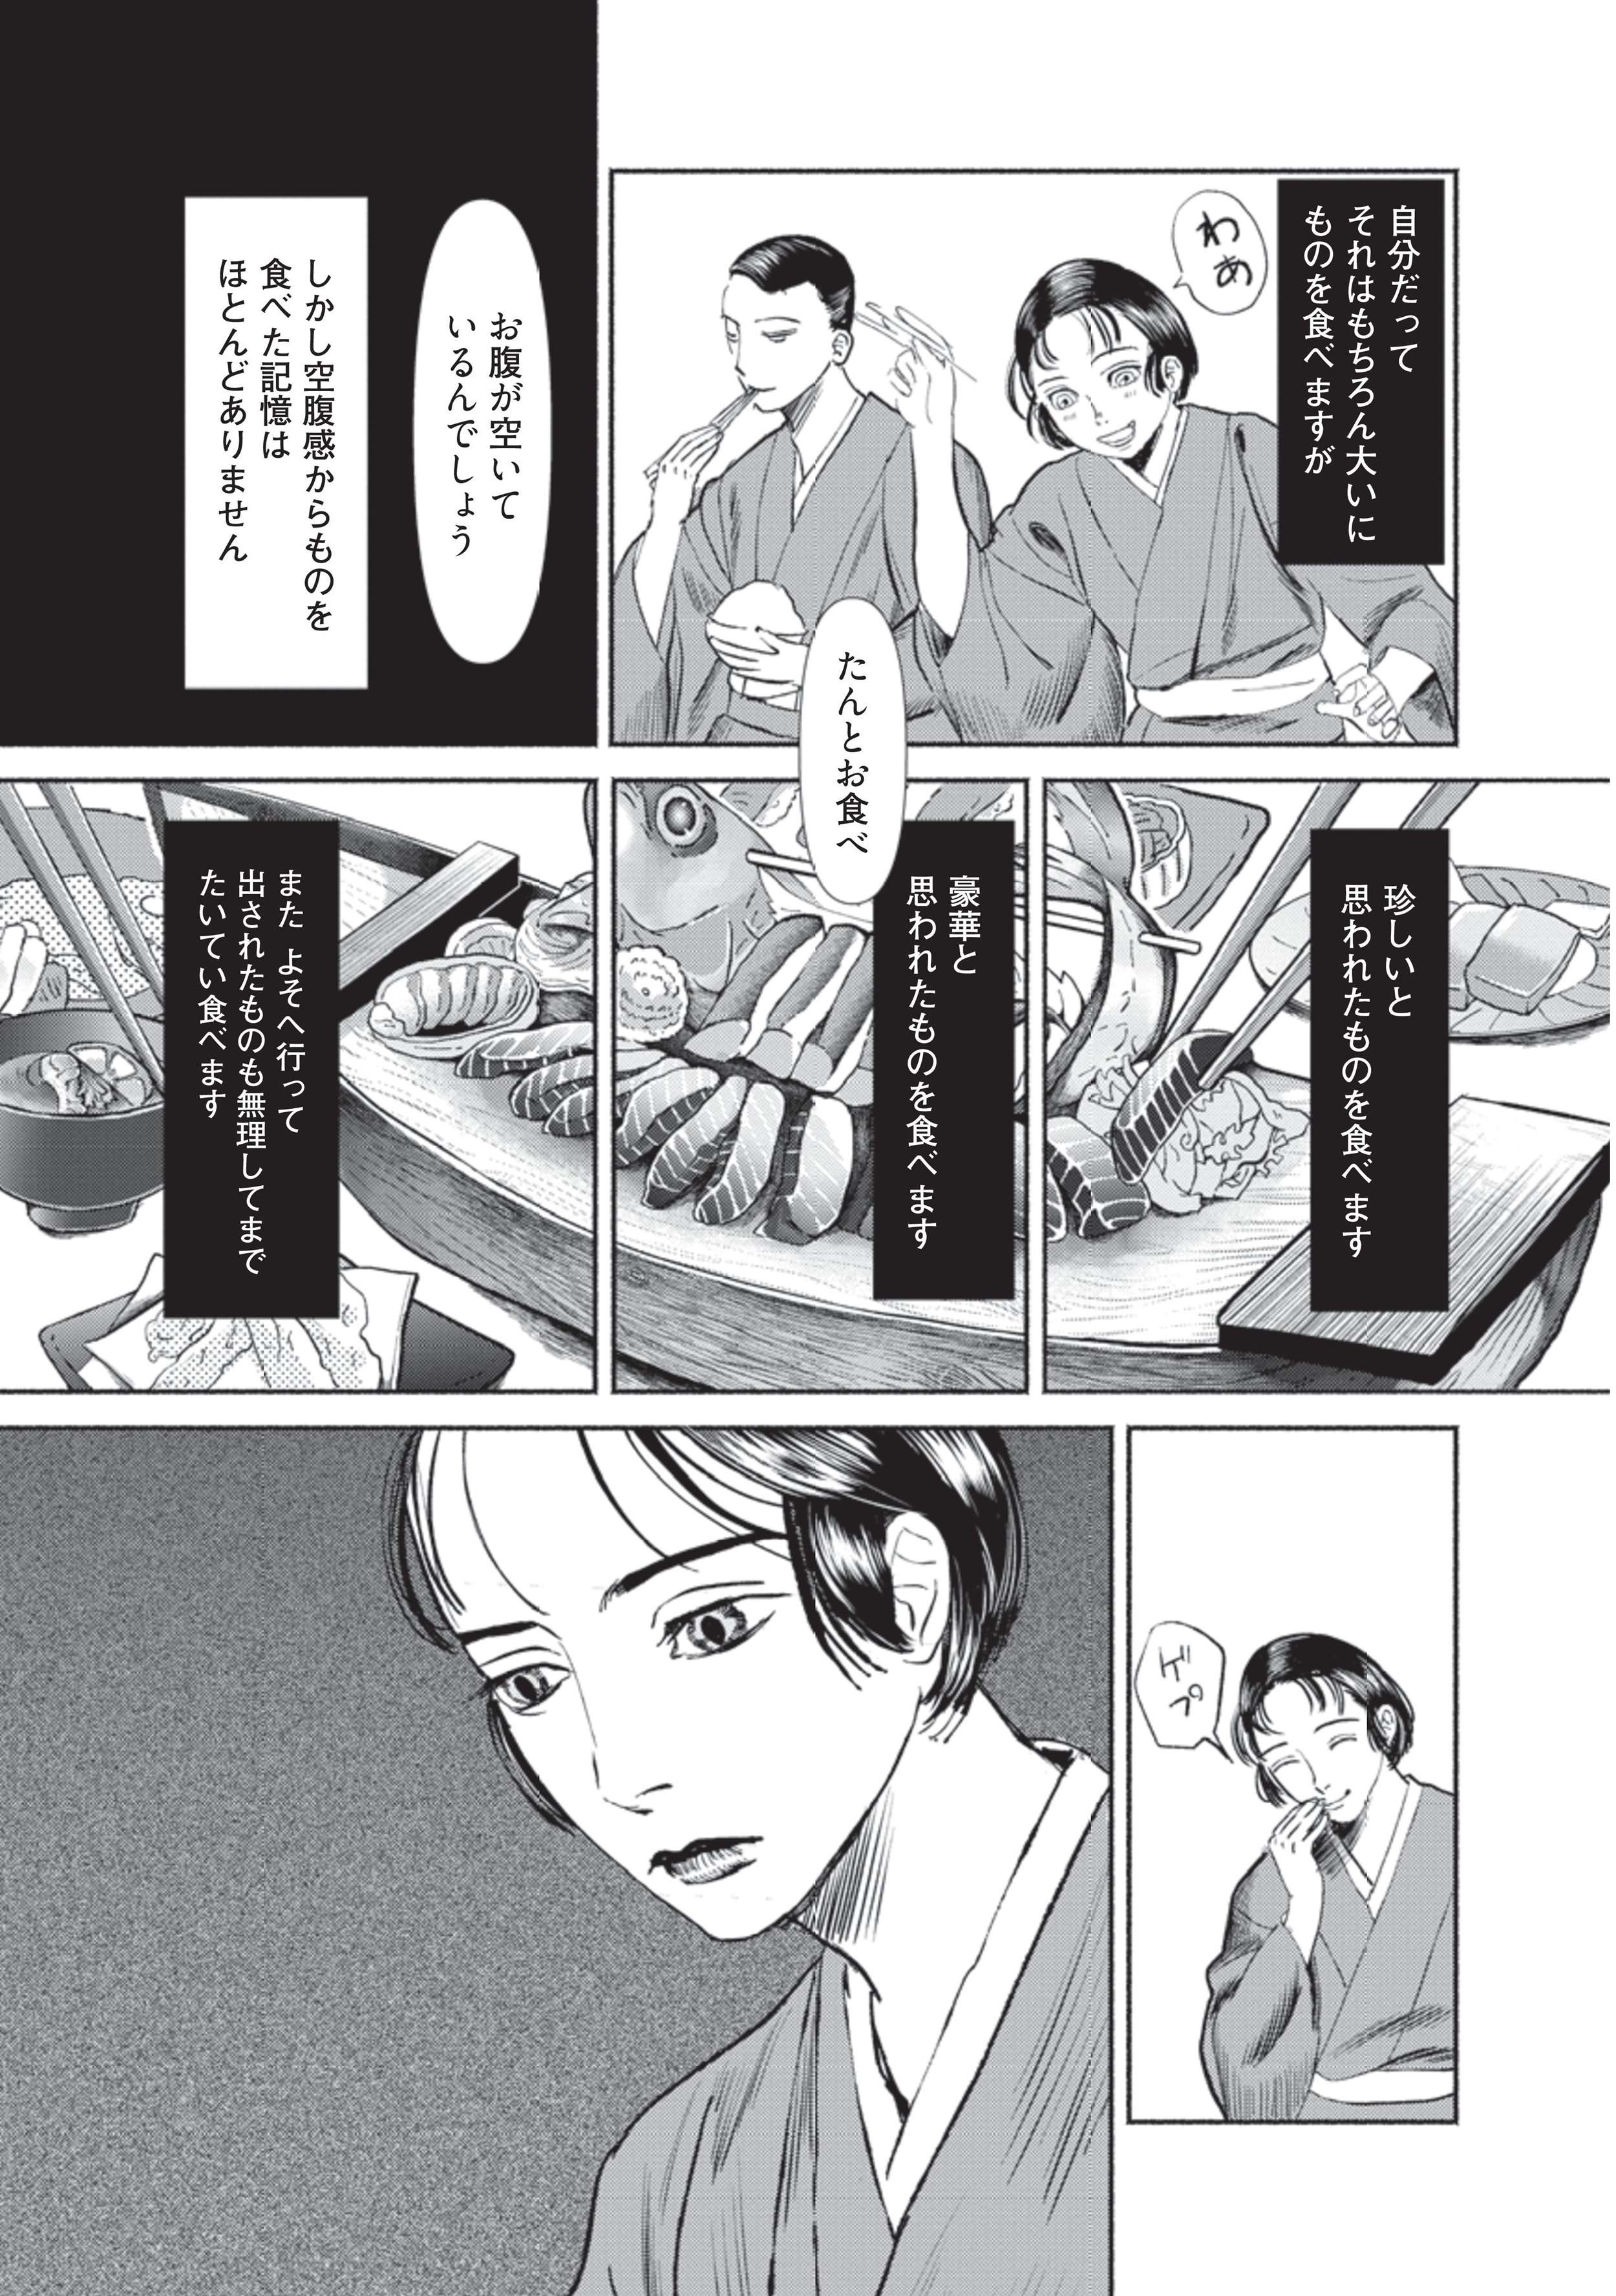 空腹がわからない。少年は「人間の普通の感覚」を理解できずに育つ／漫画 人間失格 manga_ningenshikkaku2-5.jpg